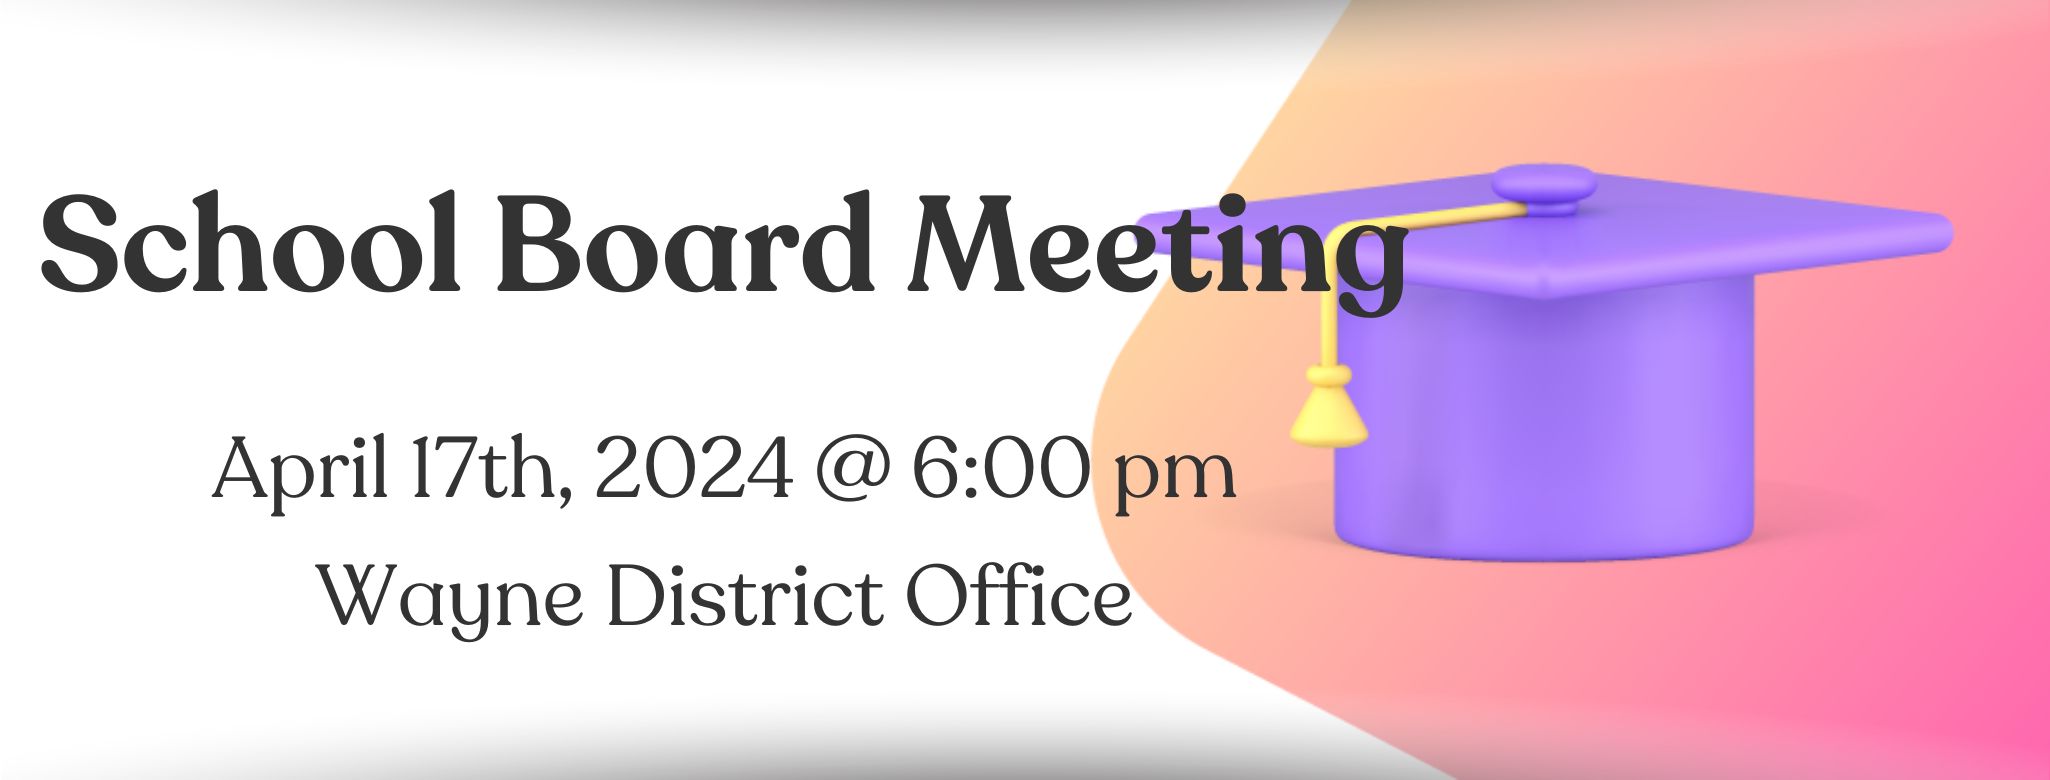 School Board Meeting Apr24